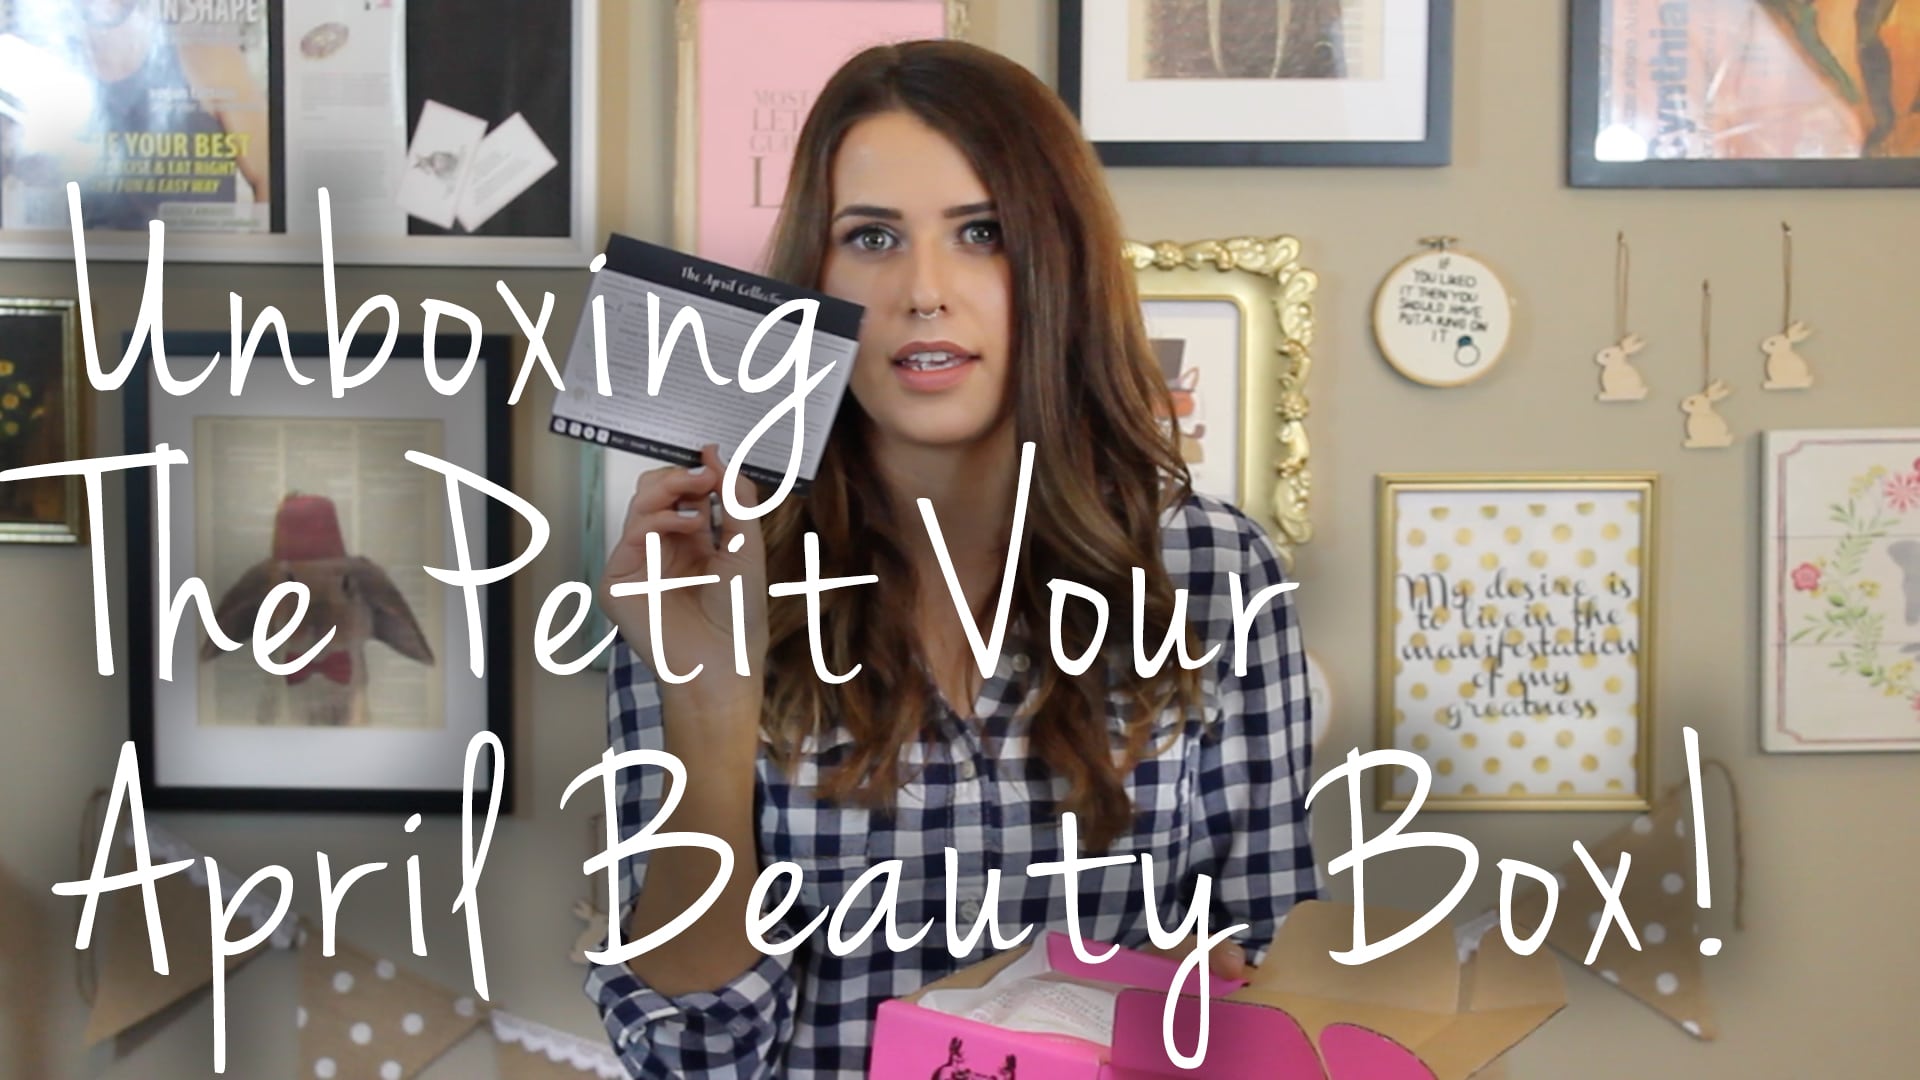 Petit Vour April 2015 Beauty Box Video